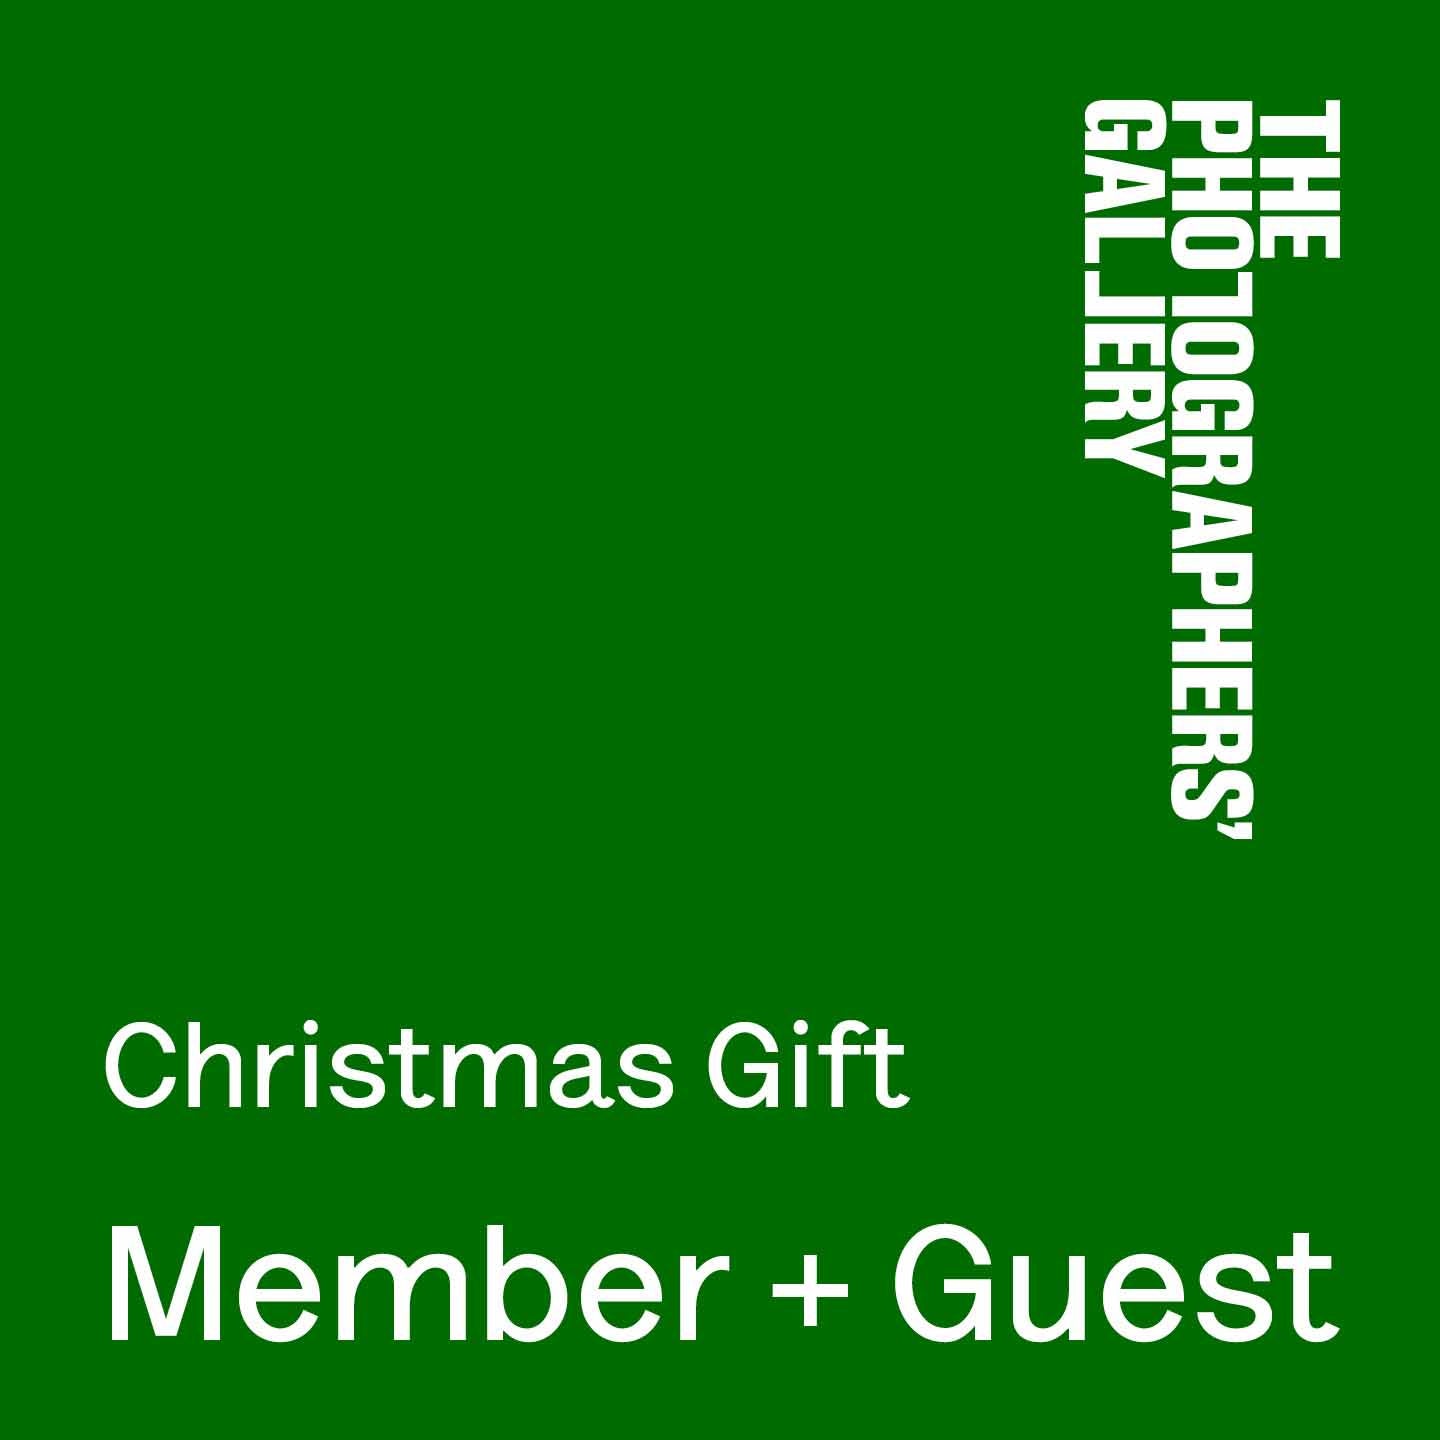 Christmas Gift Membership: Member Plus Guest